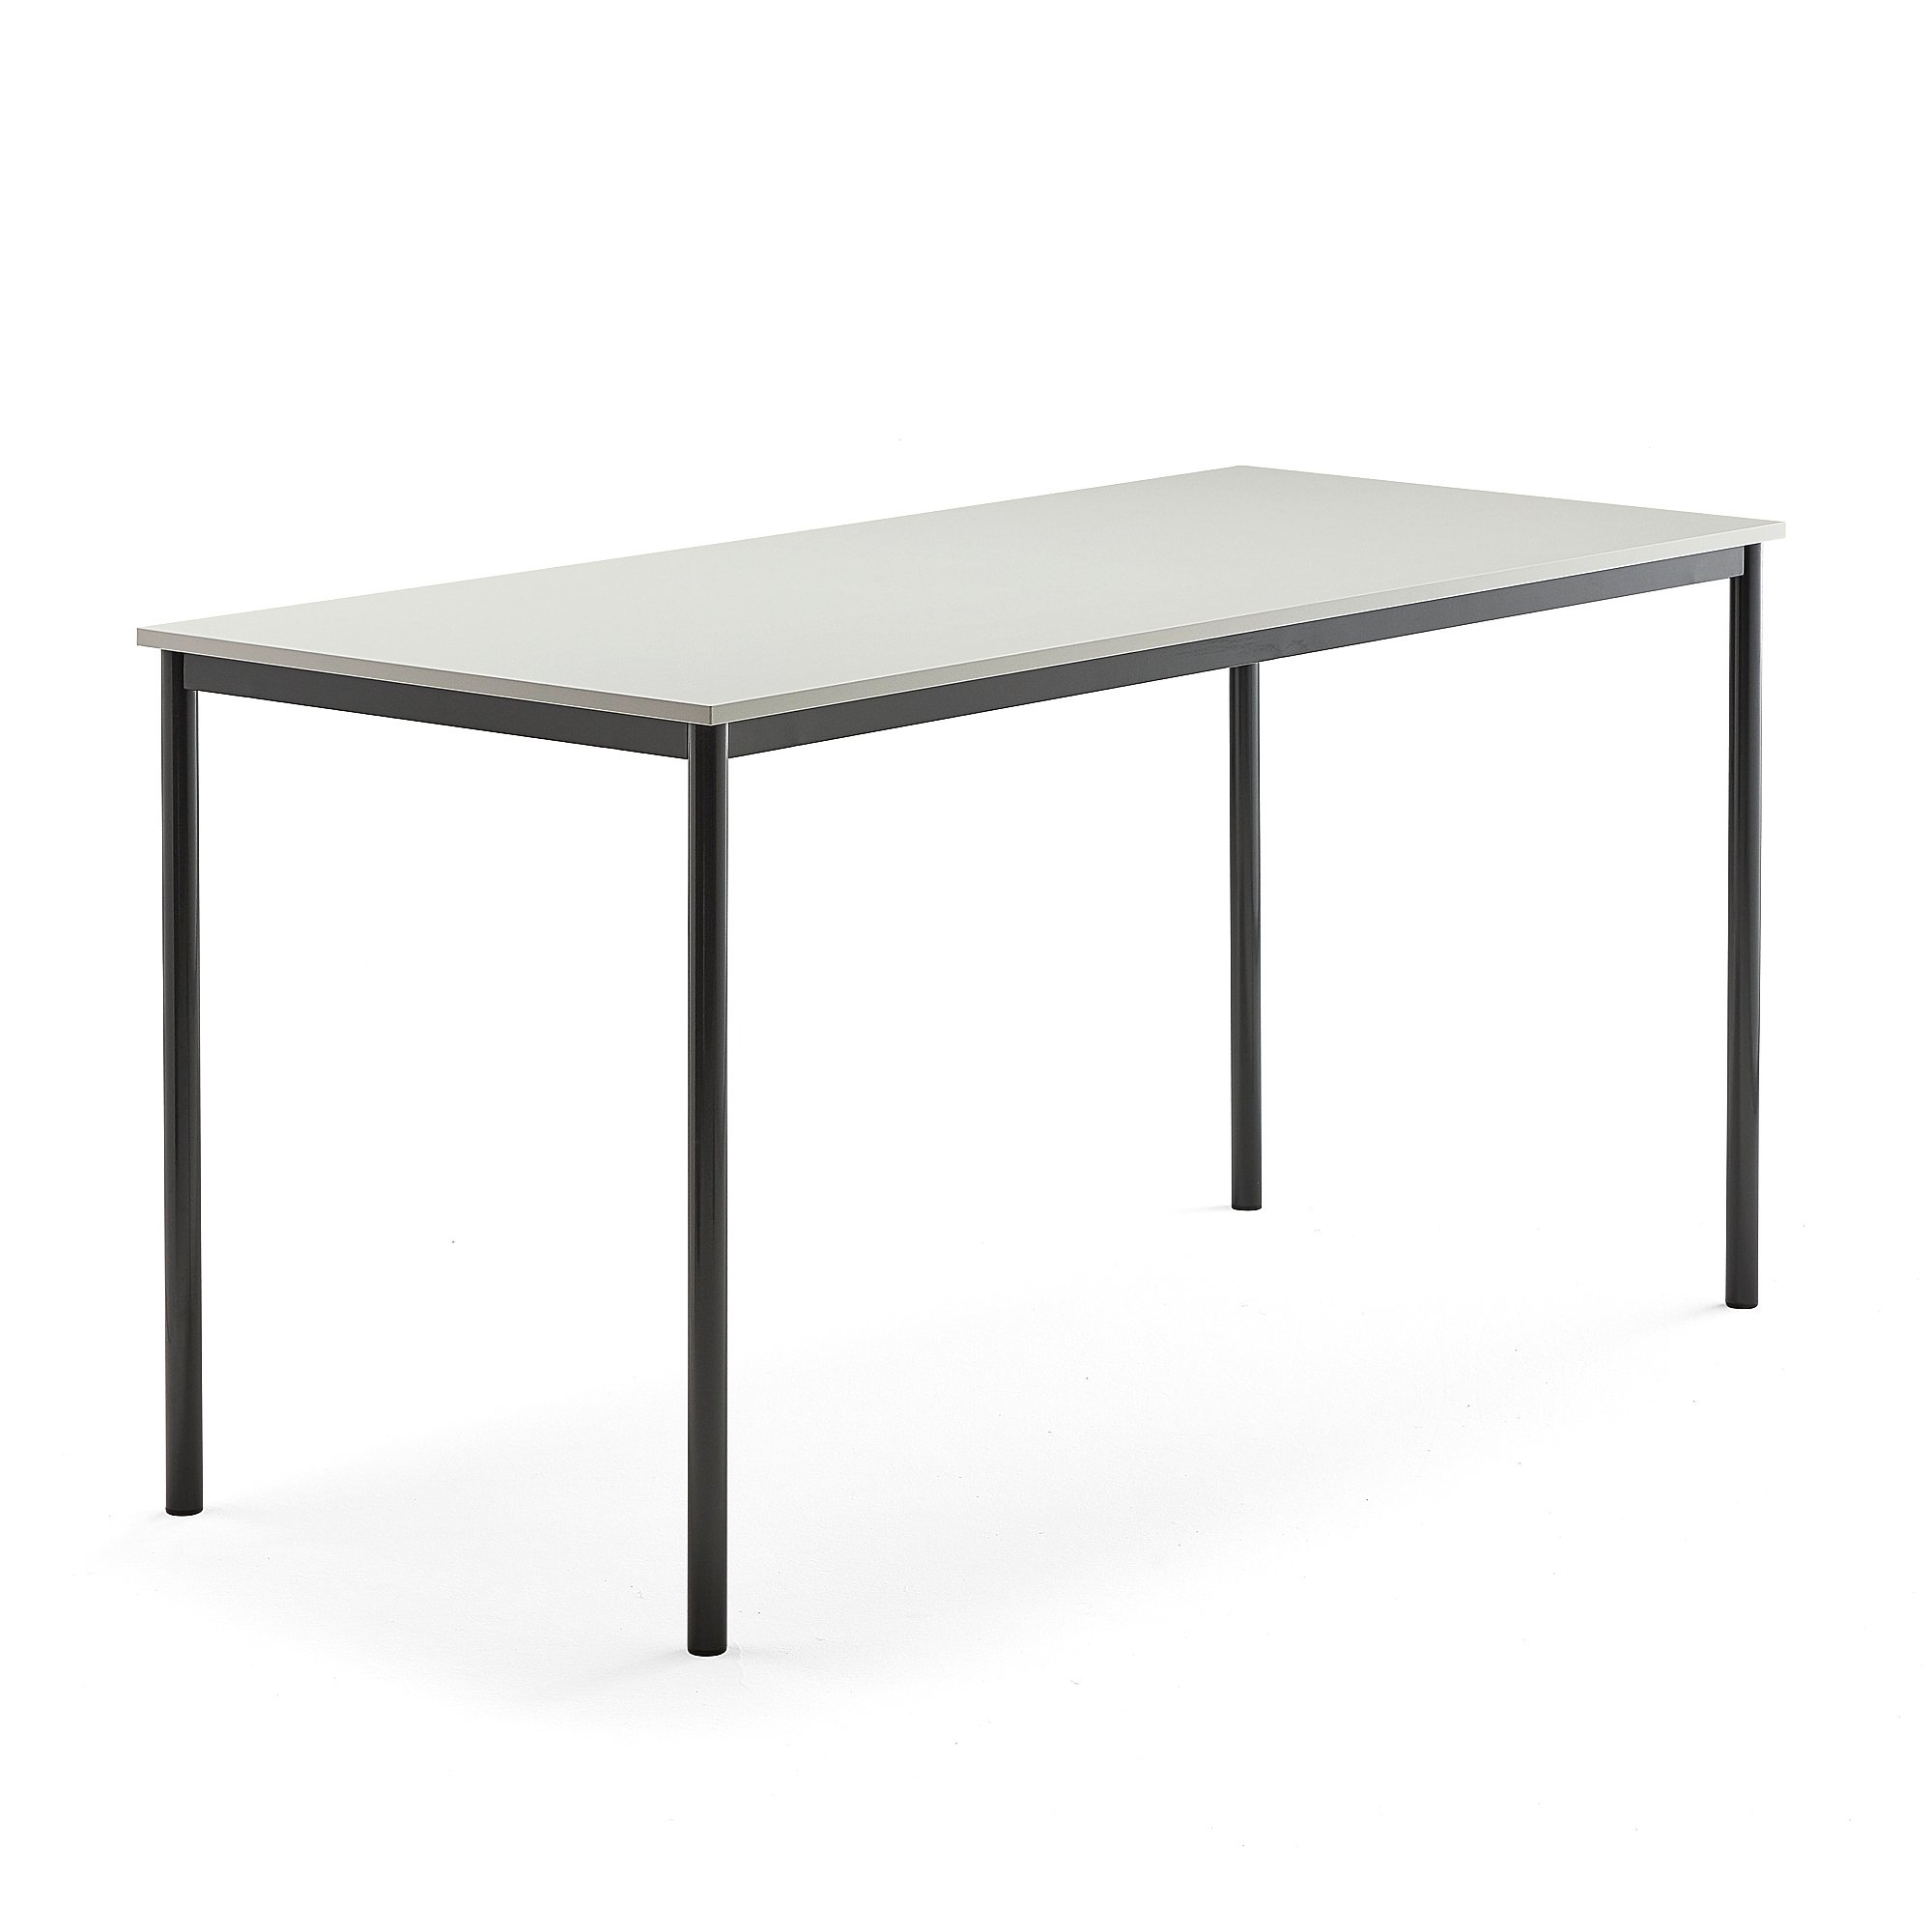 Stůl SONITUS, 1800x800x900 mm, antracitově šedé nohy, HPL deska tlumící hluk, šedá